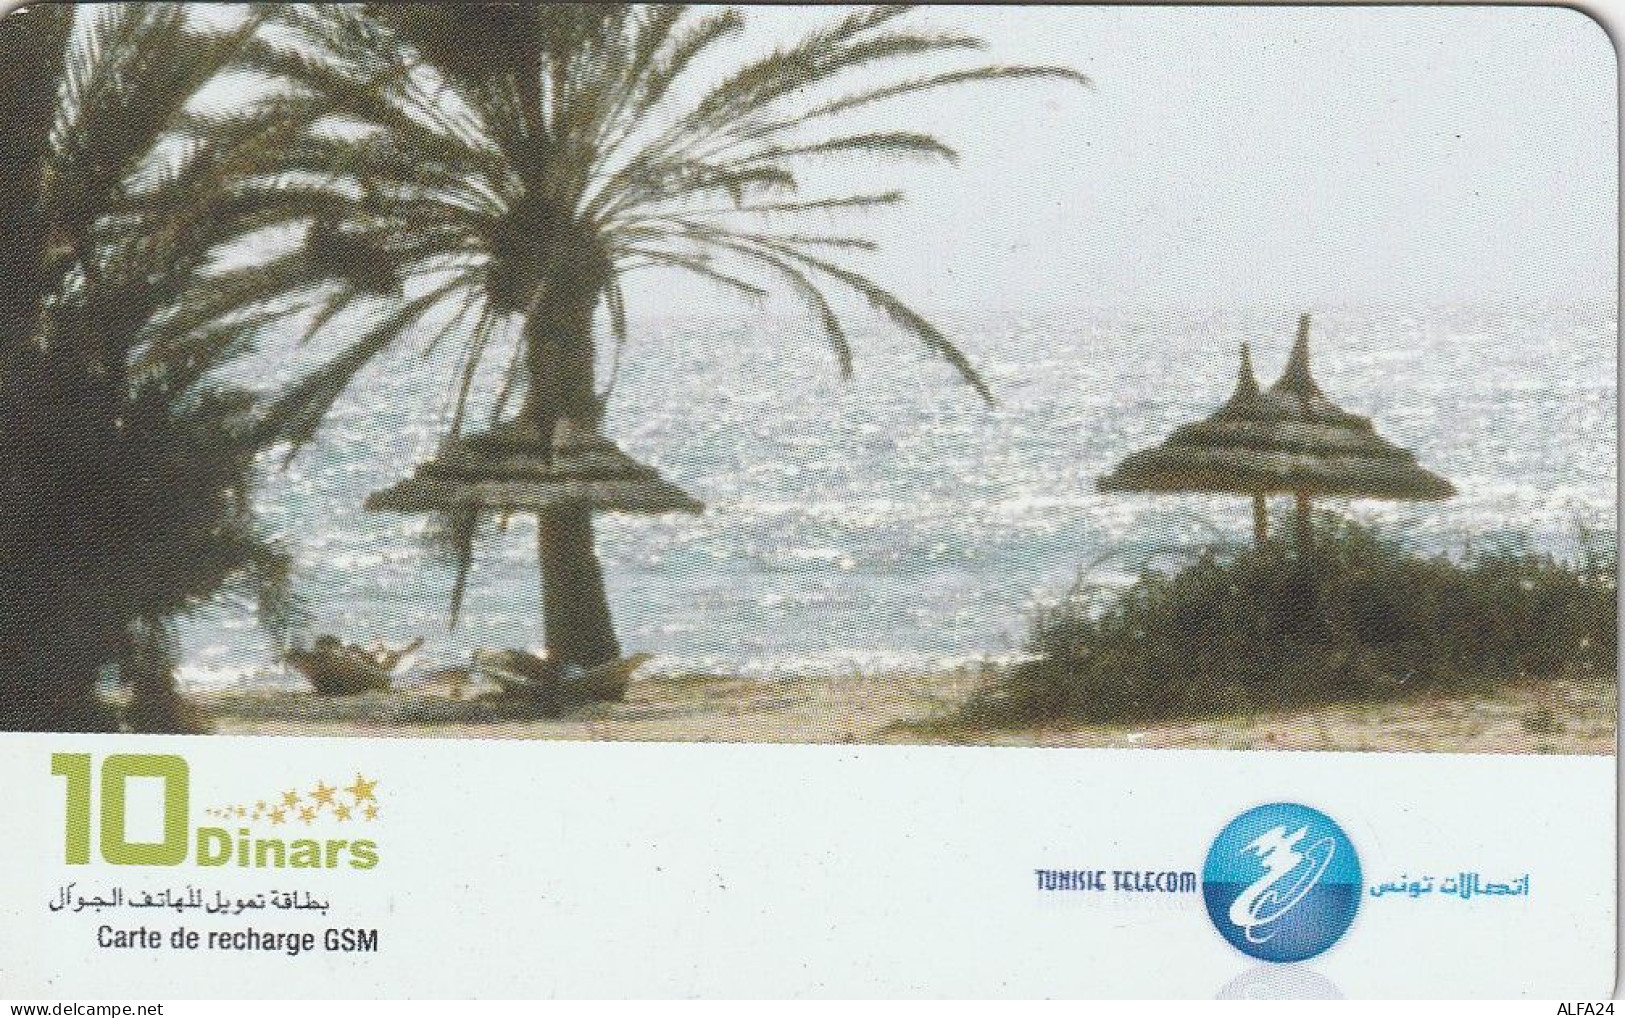 PREPAID PHONE CARD TUNISIA  (CV5247 - Tunisia